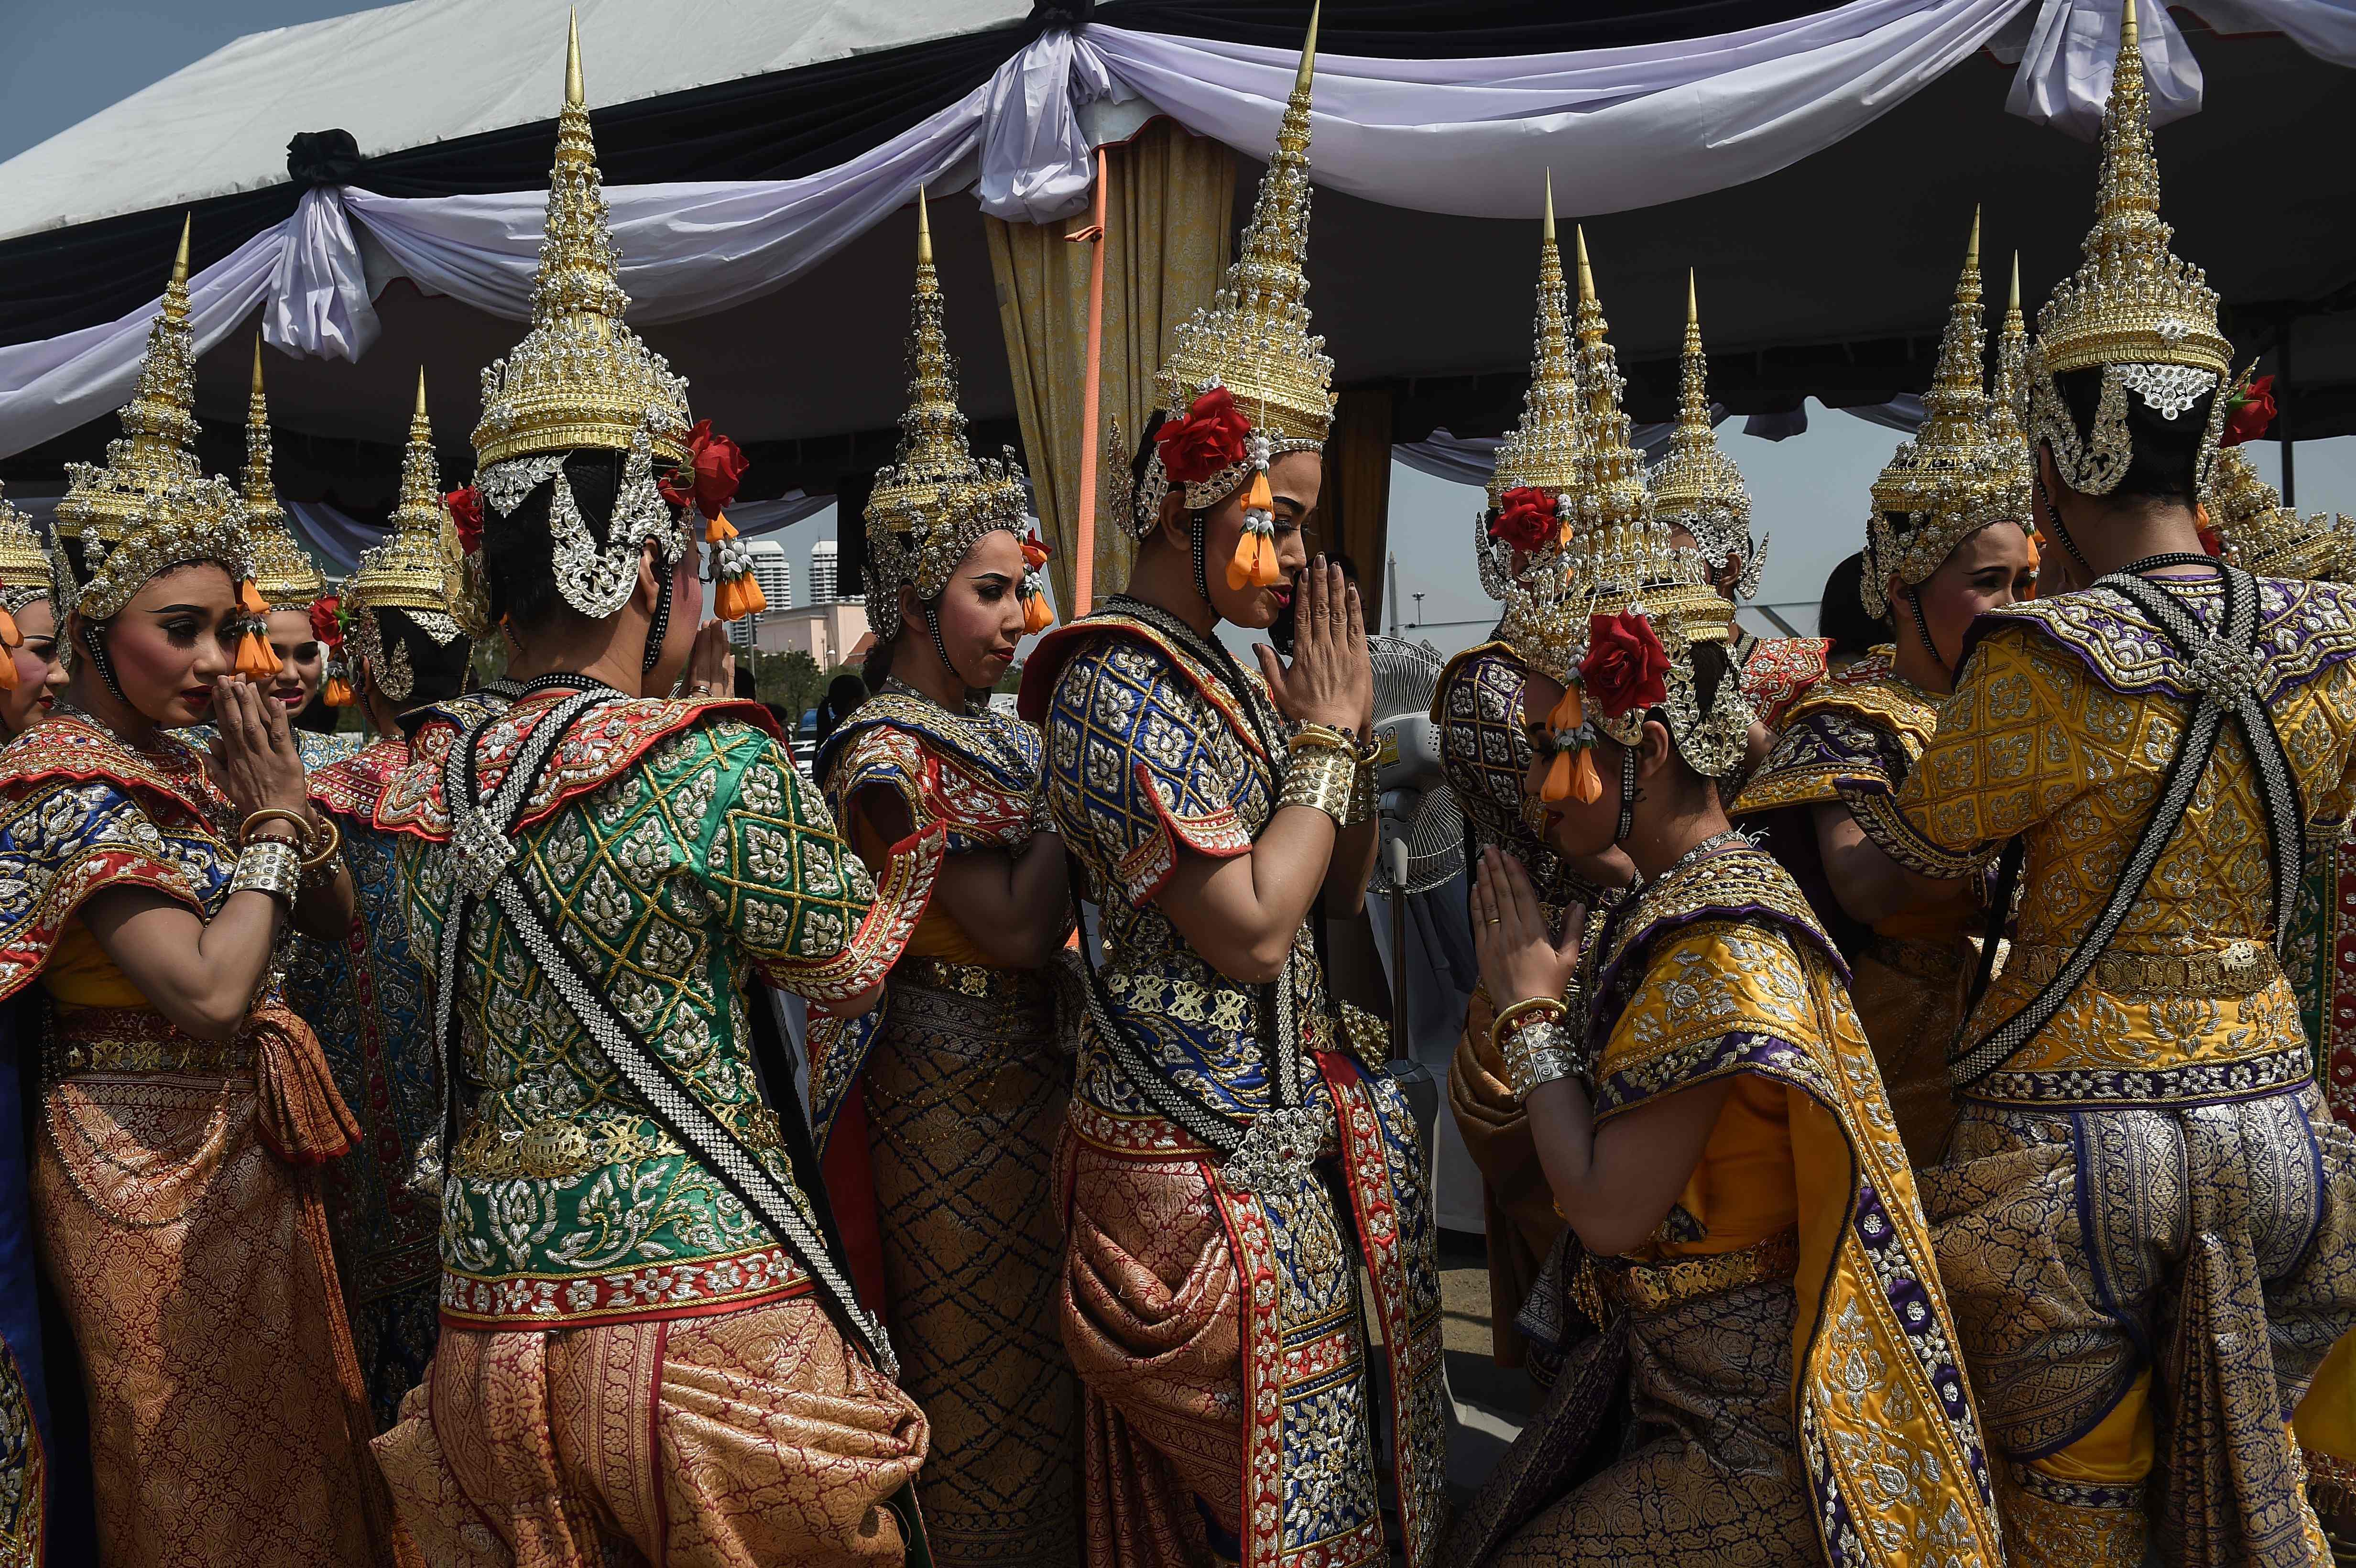 الراقصات يتابعن تدريبهمن على أداء العروض الفنية خلال محرقة ملك تايلاند الراحل